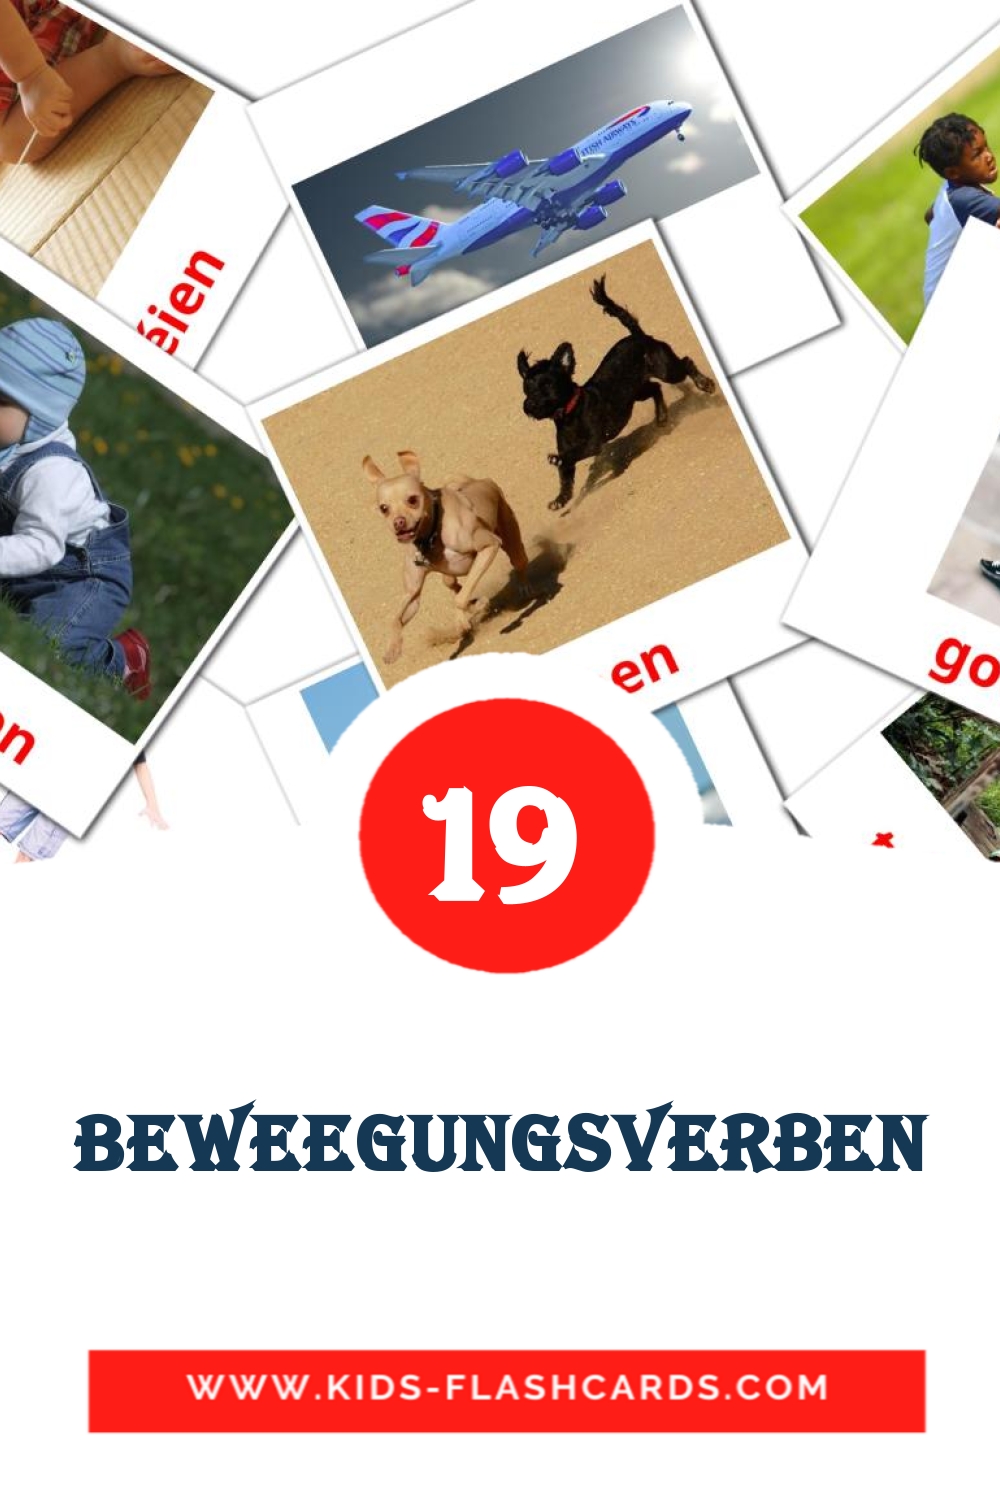 19 Beweegungsverben fotokaarten voor kleuters in het luxemburgs